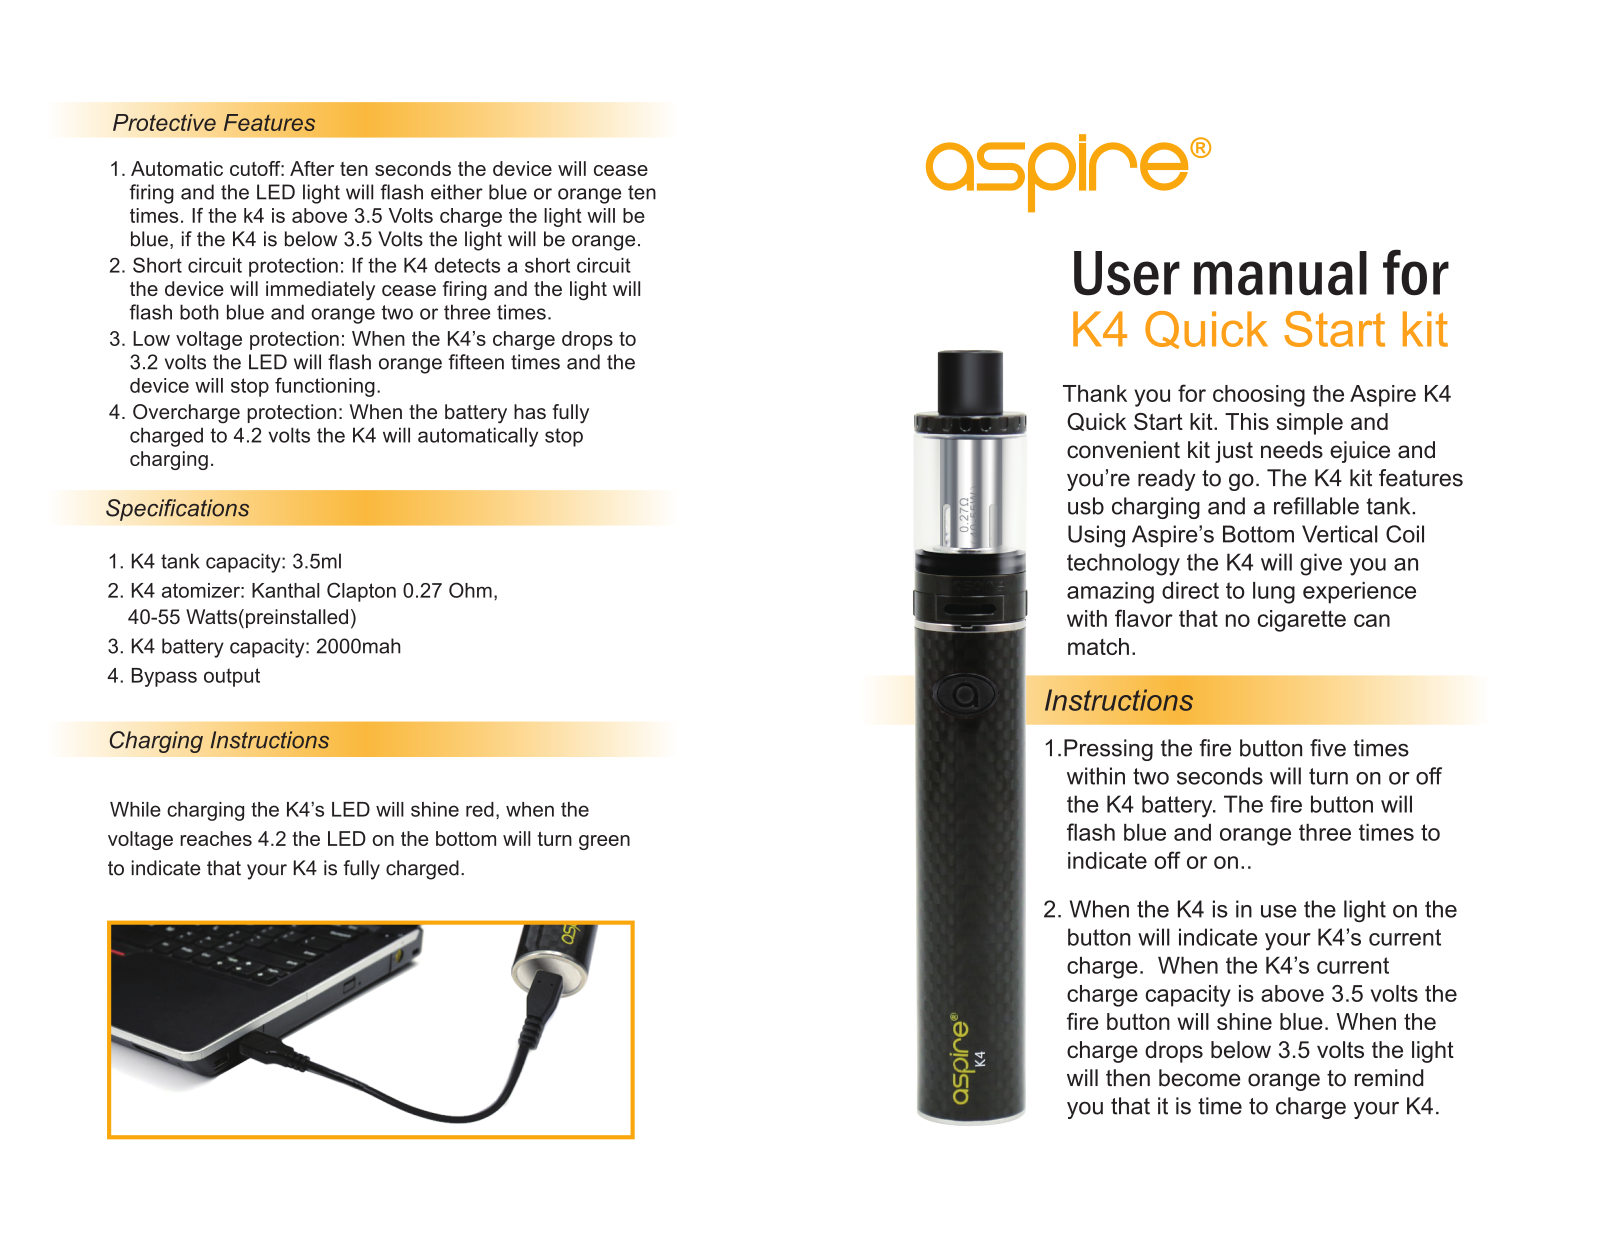 Aspire K4 User Manual